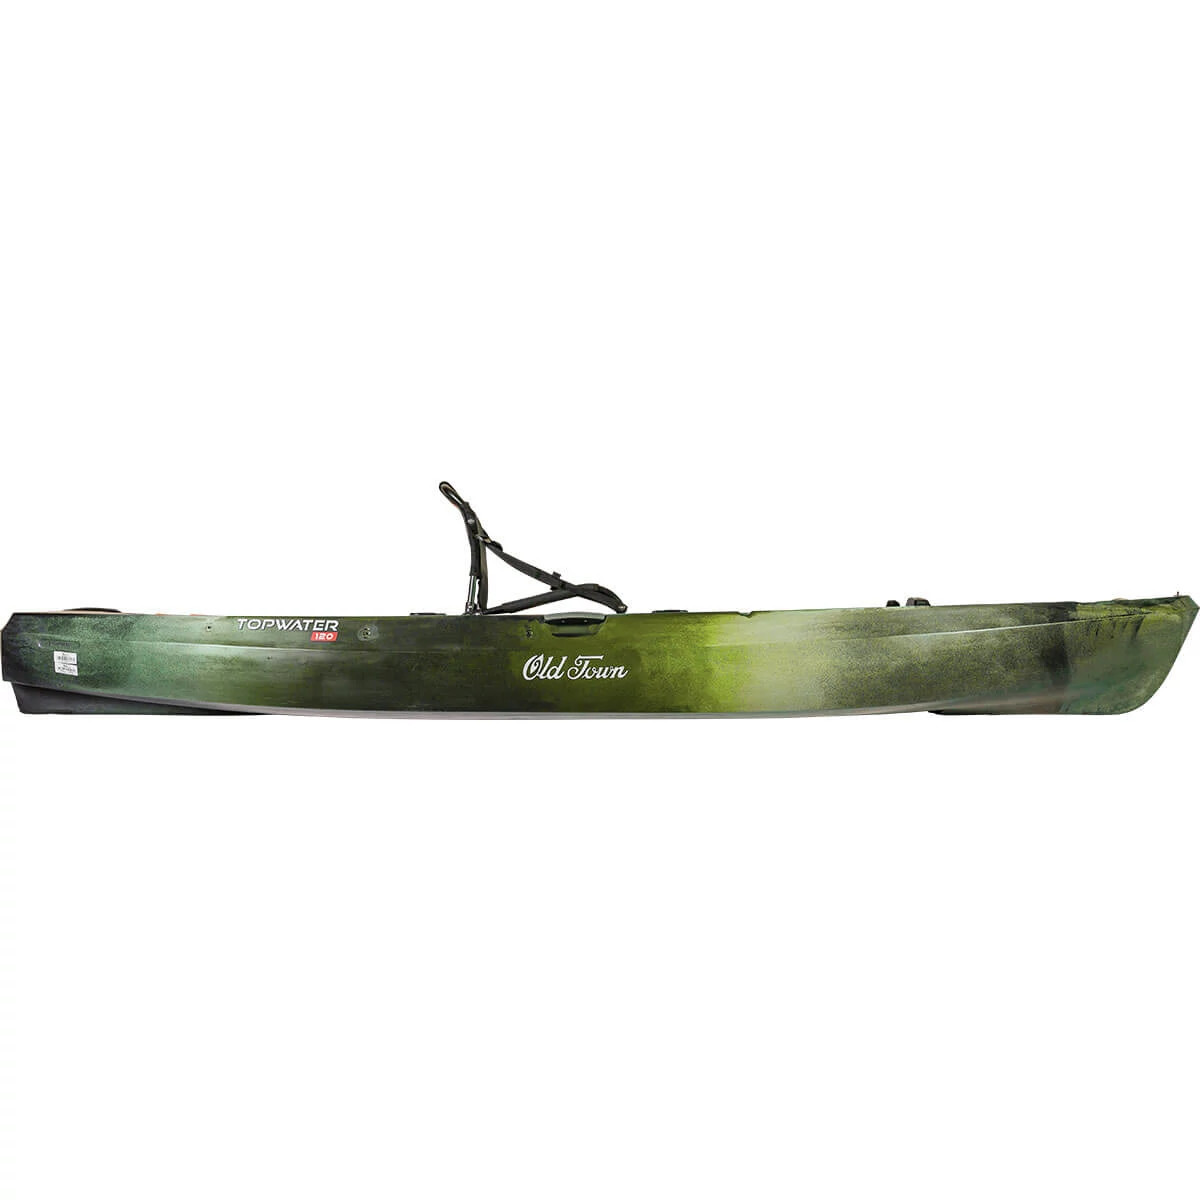 2 Pack Kayak Paddle Holder Canoe Boat Oars Clip Easy-mount Fishing Rod Strap 